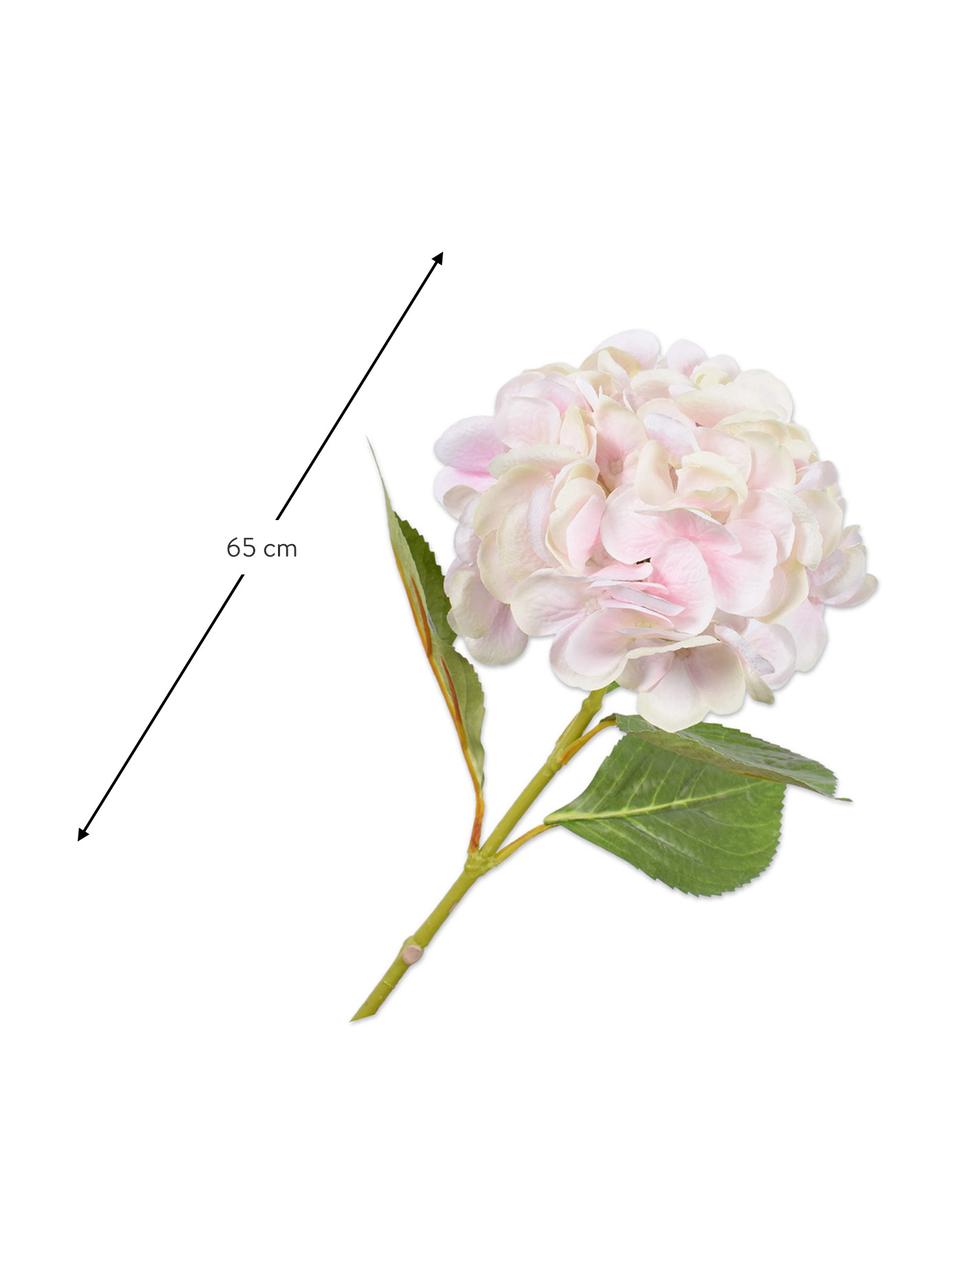 Hortensia artificiel, blanc/rose, Plastique, câble métallique, Blanc, rose, long. 65 cm